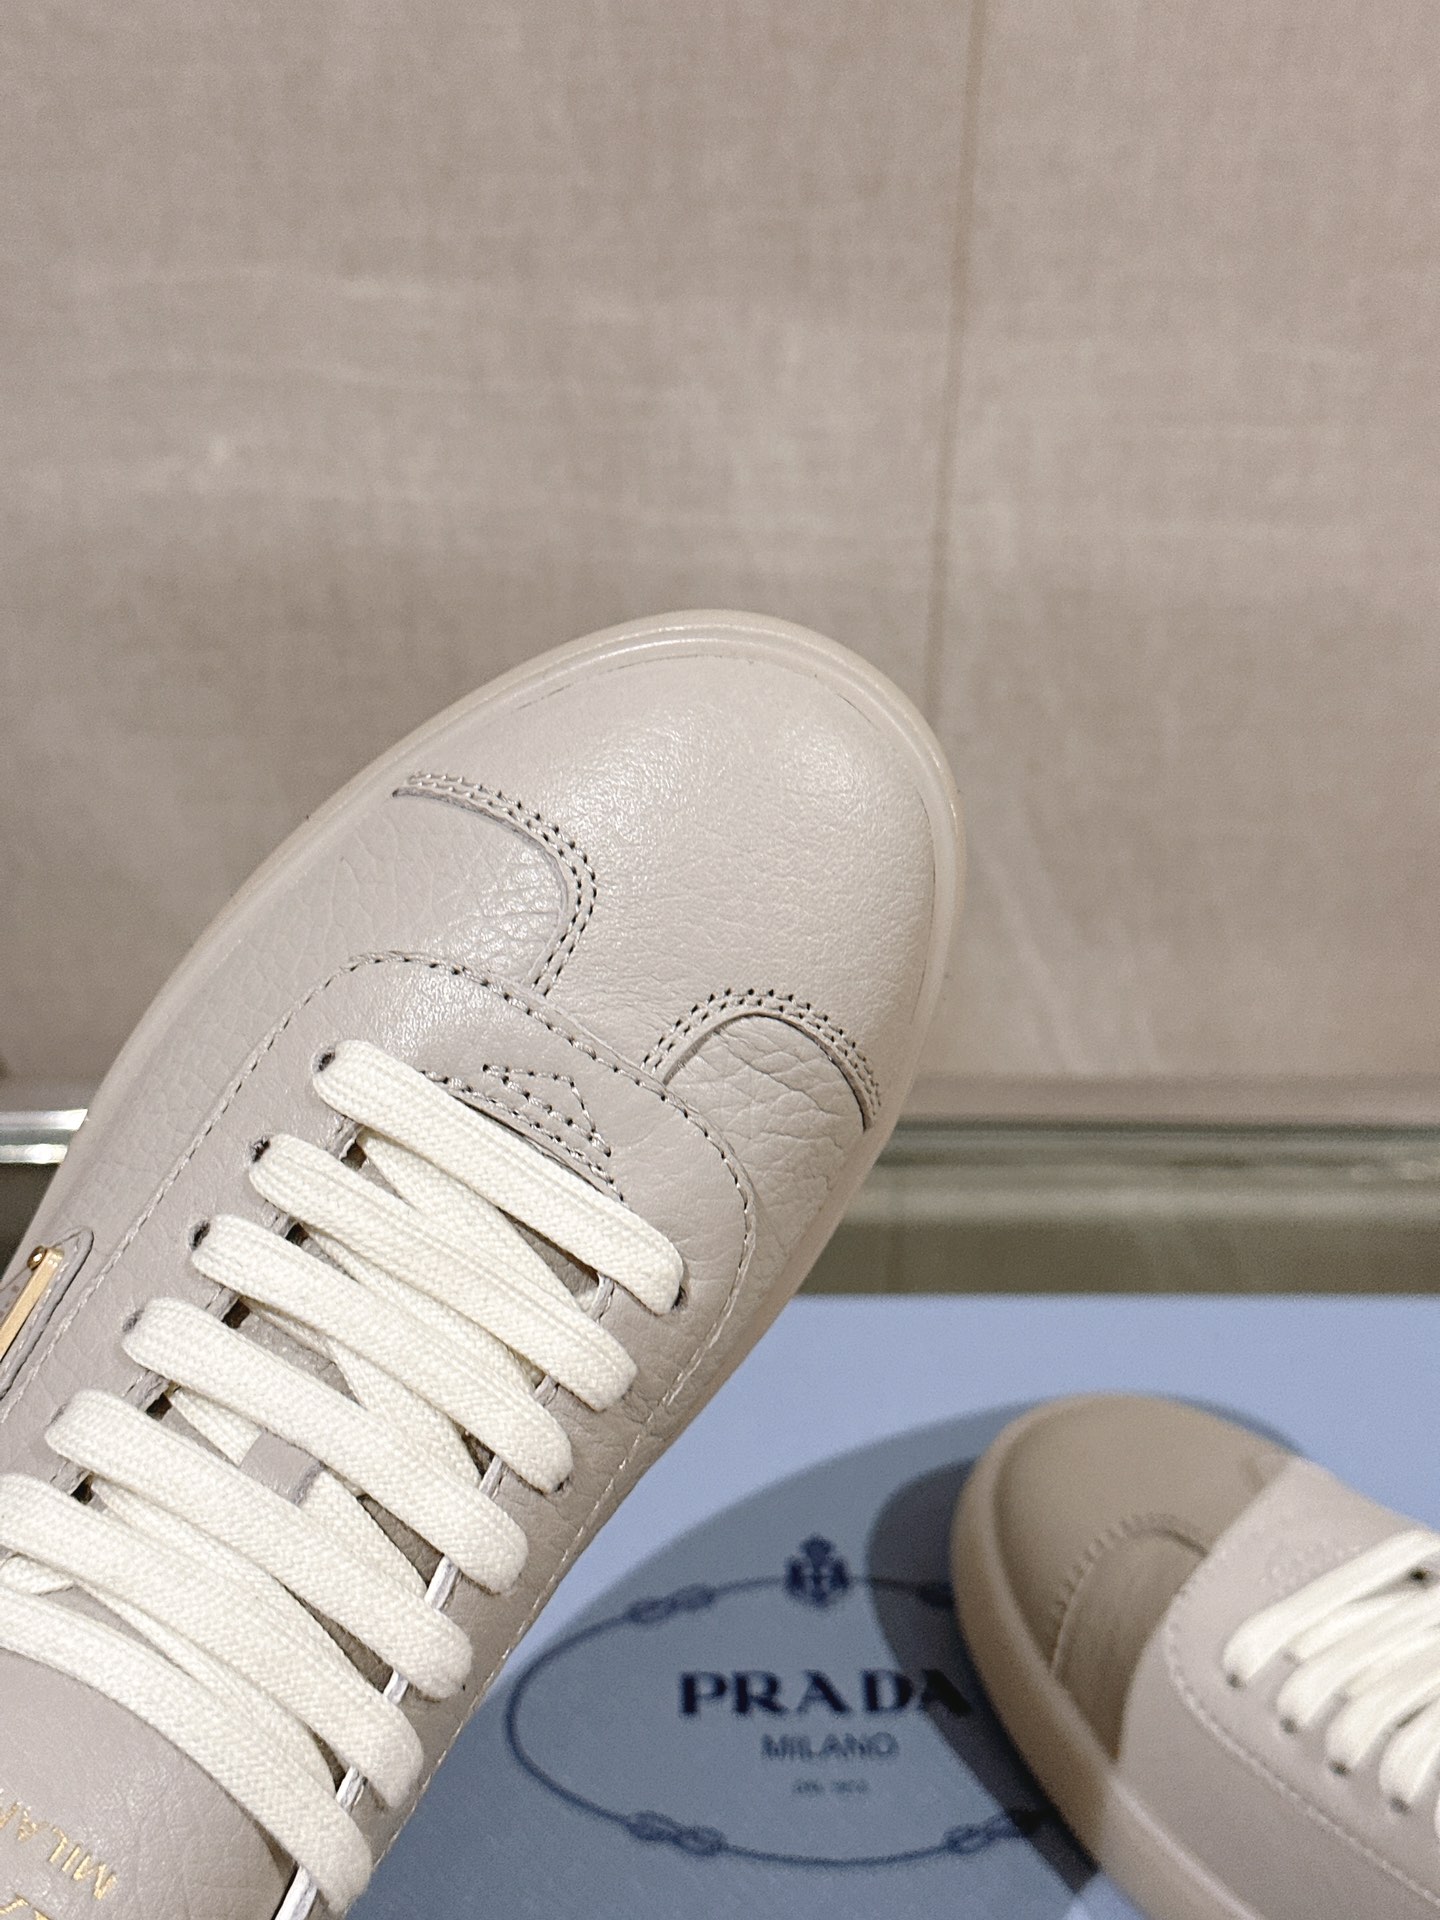 -24Ss新款Prad*低帮系带休闲运动鞋这款皮革运动鞋时尚简洁展现出极简风格和运动个性的充分融合搭配经